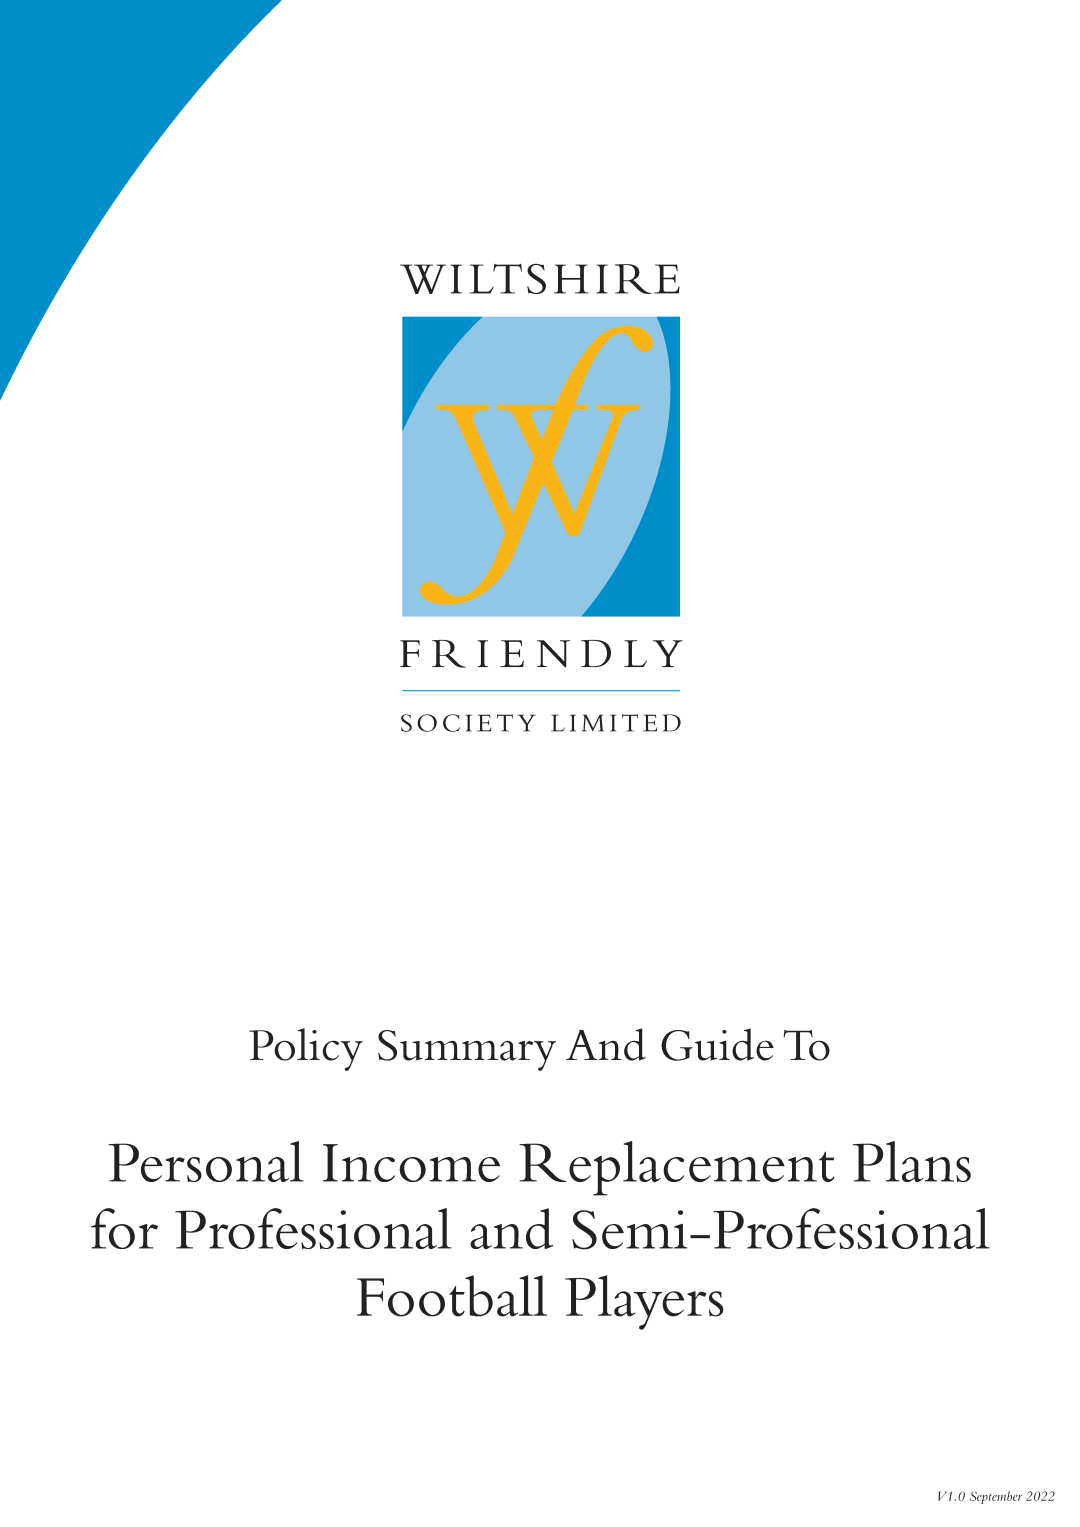 Pro & Semi-Pro Football Policy Summary